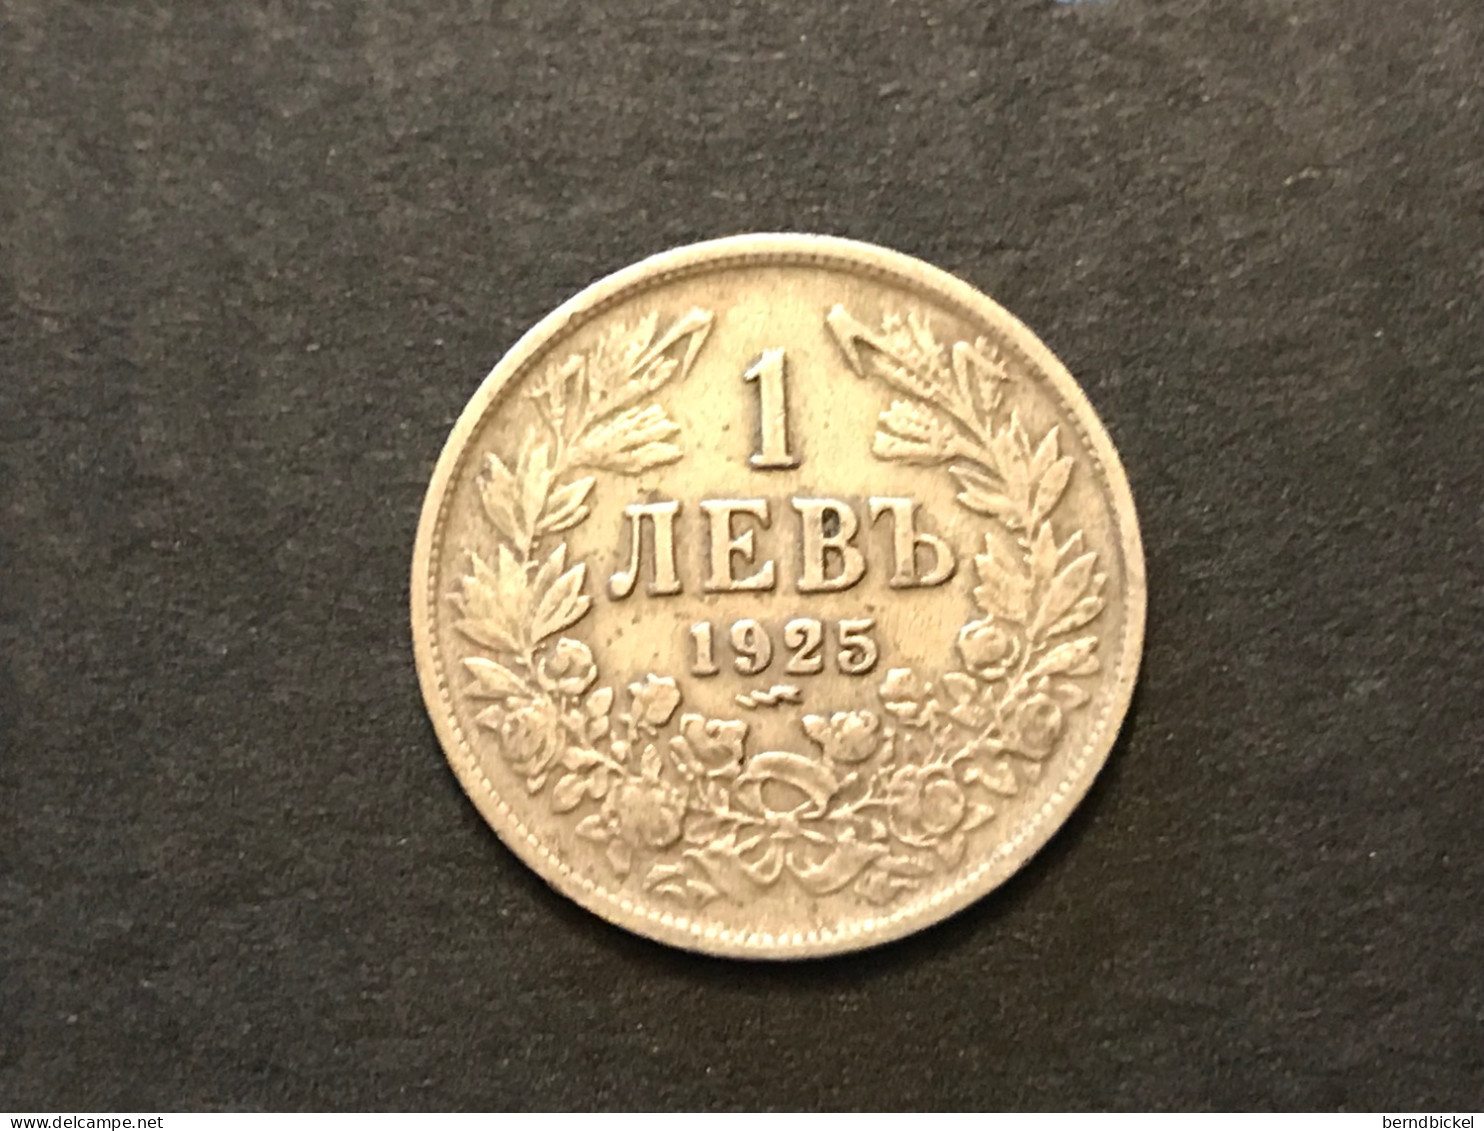 Münze Münzen Umlaufmünze Bulgarien 1 Lew 1925 Münzzeichen Blitz - Bulgarie